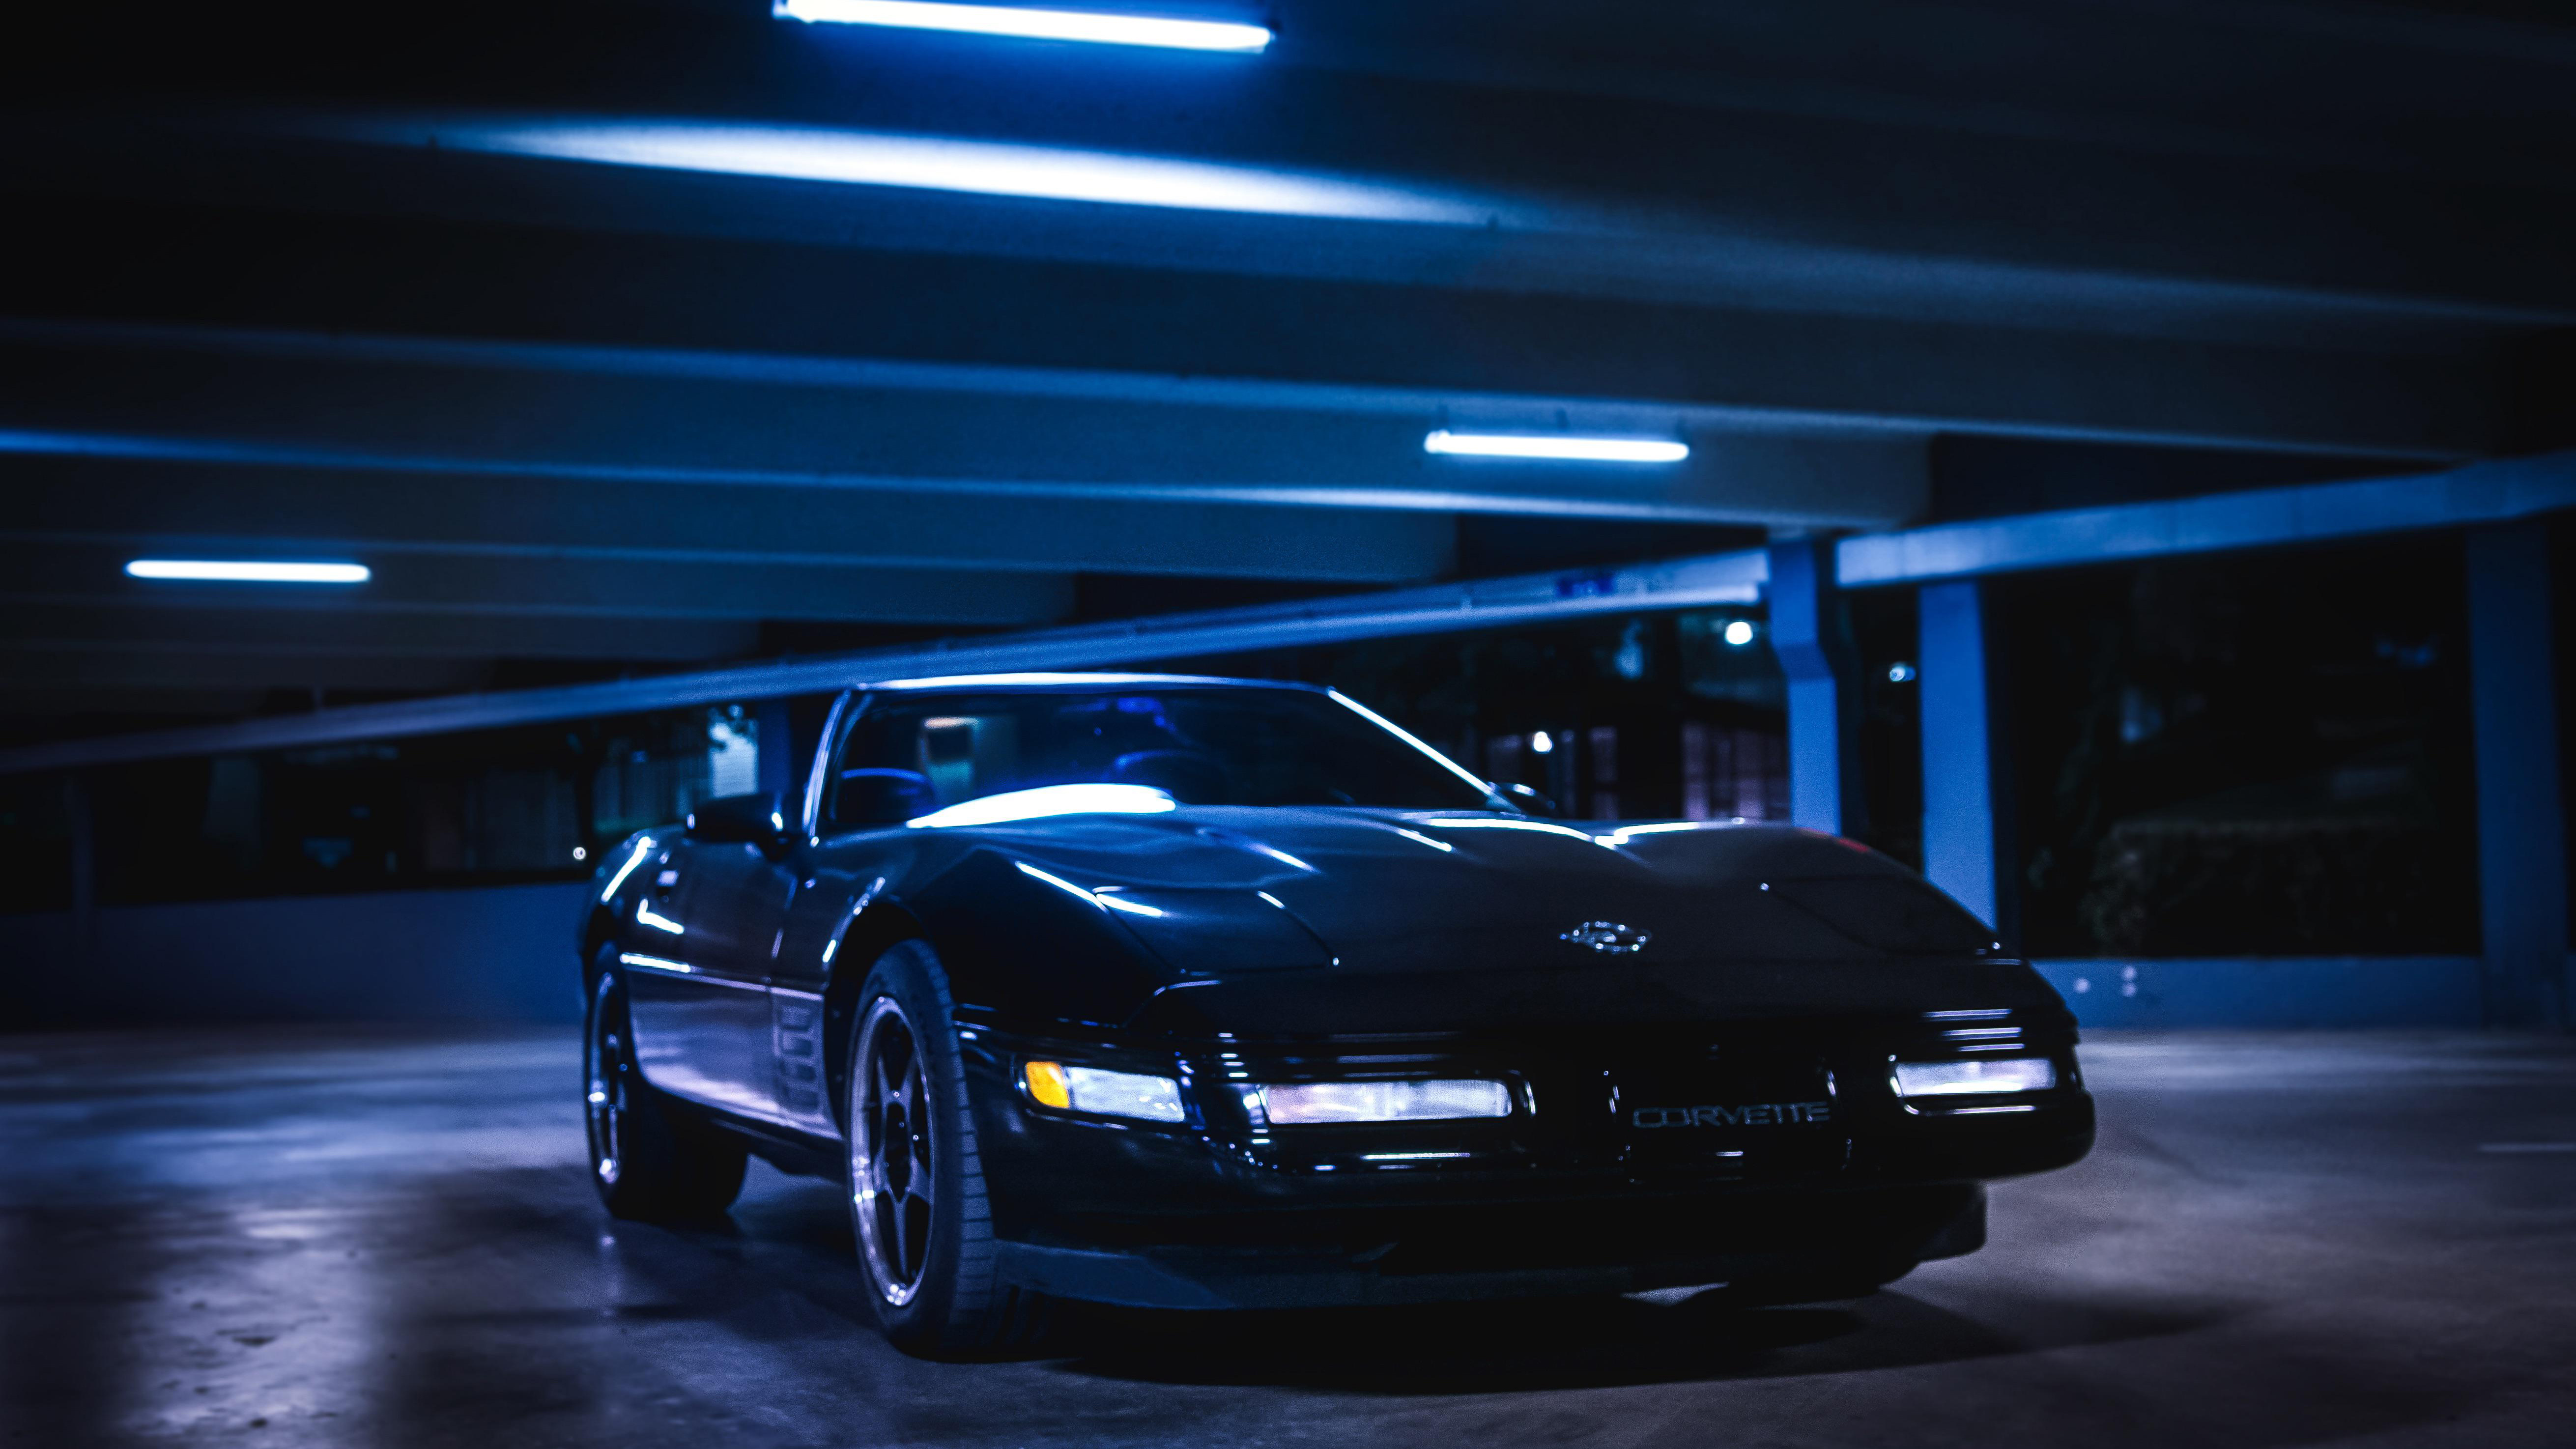 Corvette in an underground parking garage